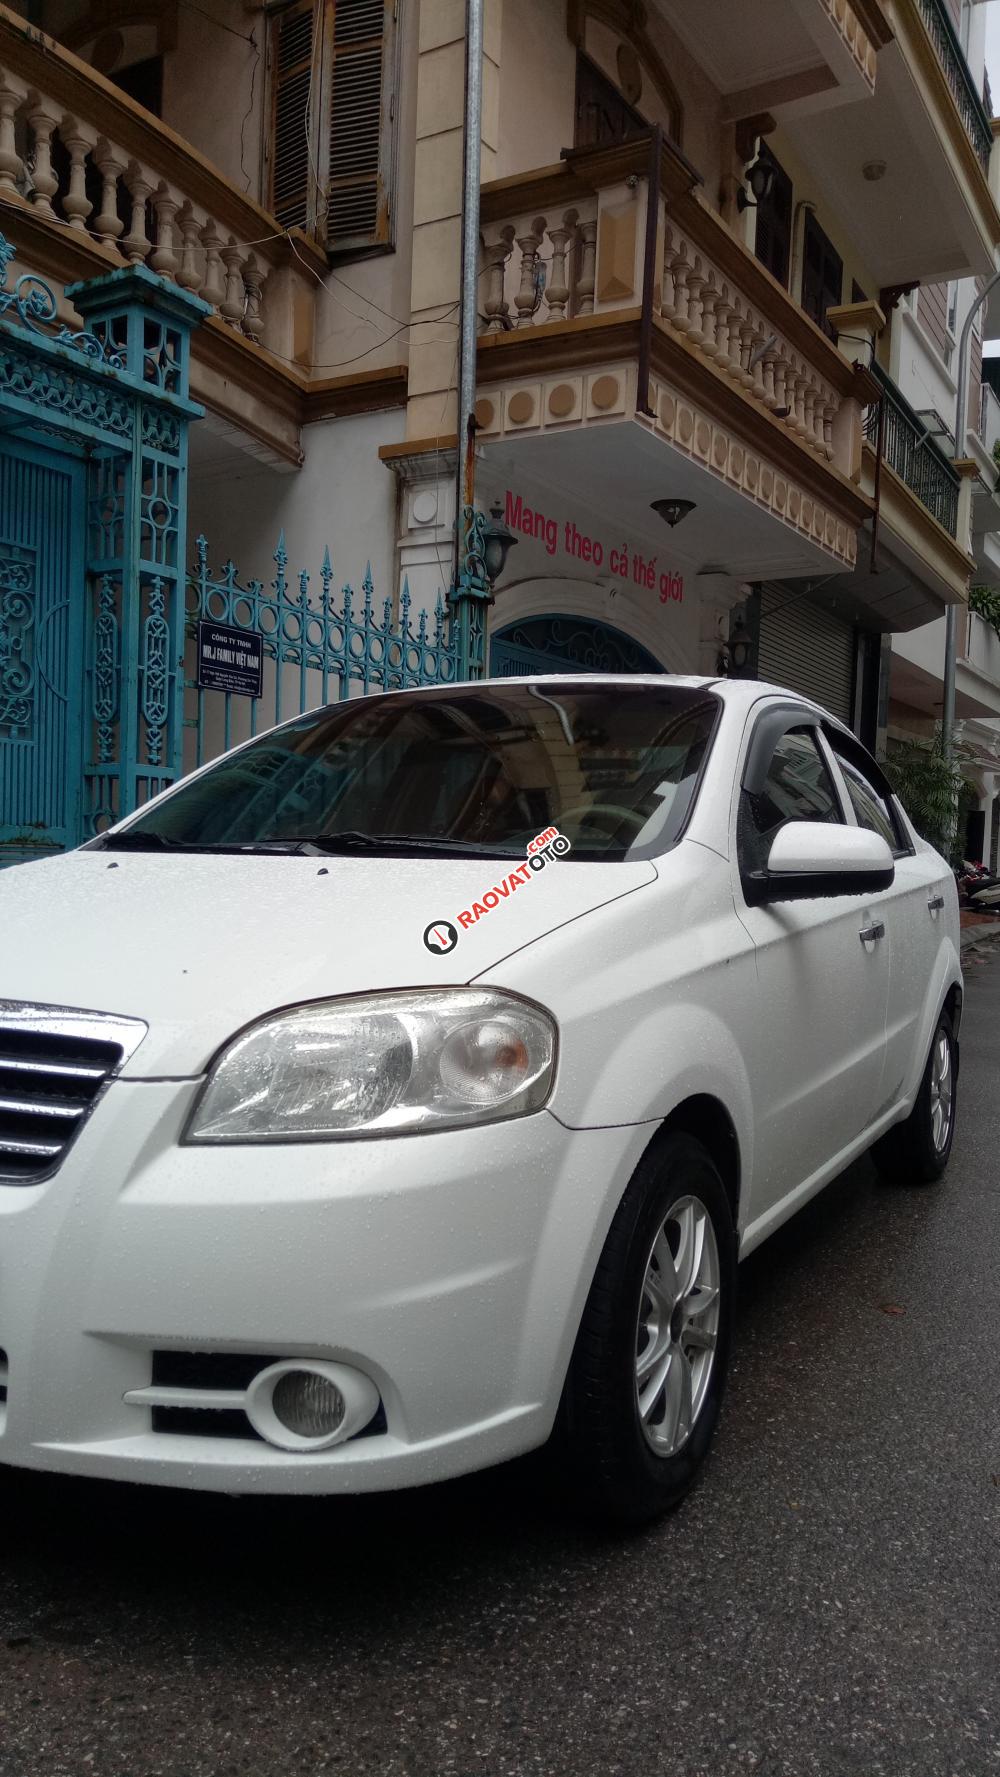 Bán xe Daewoo Gentra 1.5 SX 2011 màu trắng. Xe tư nhân Hà Nội 29a-0